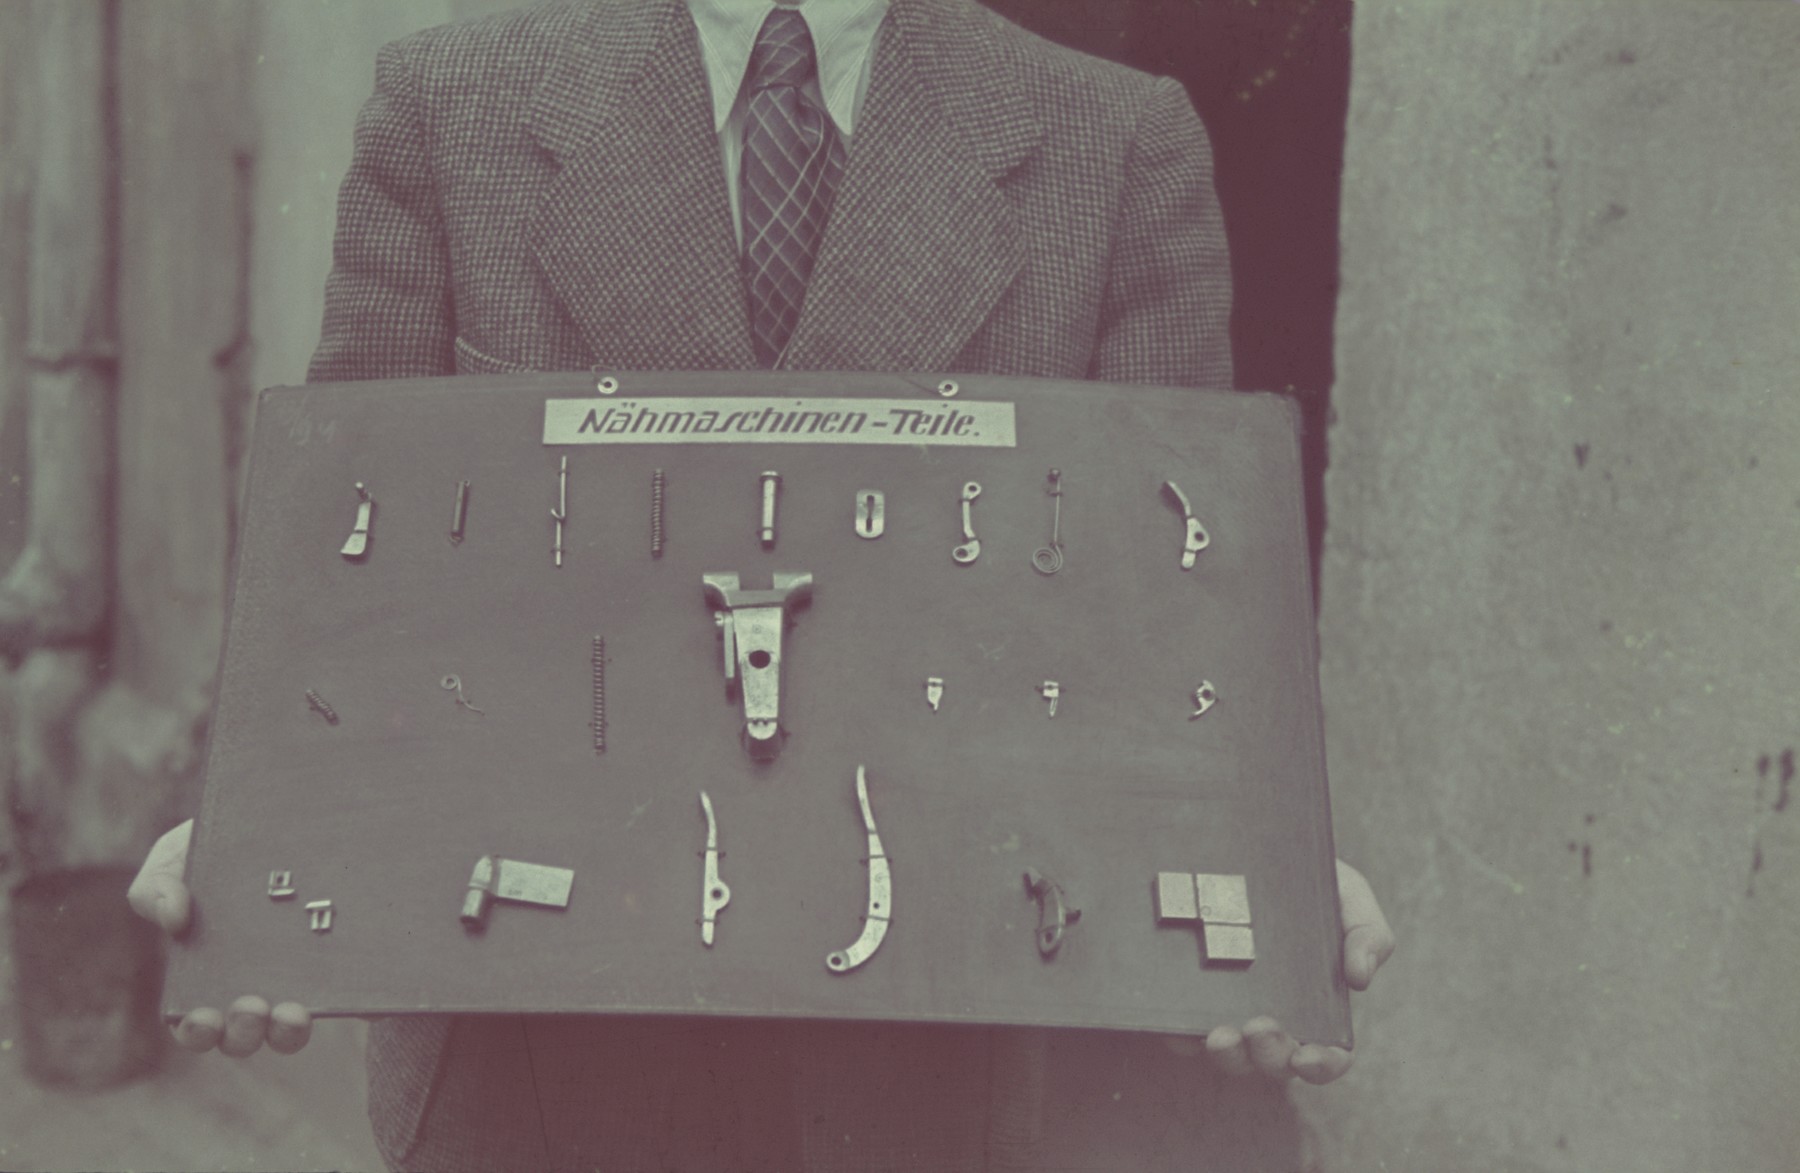 A man holds a display of sewing machine parts in the Lodz ghetto.

Original German caption: "Getto Litzmanndstadt, Aus der Feinmechanik (fine mechanics), #18.